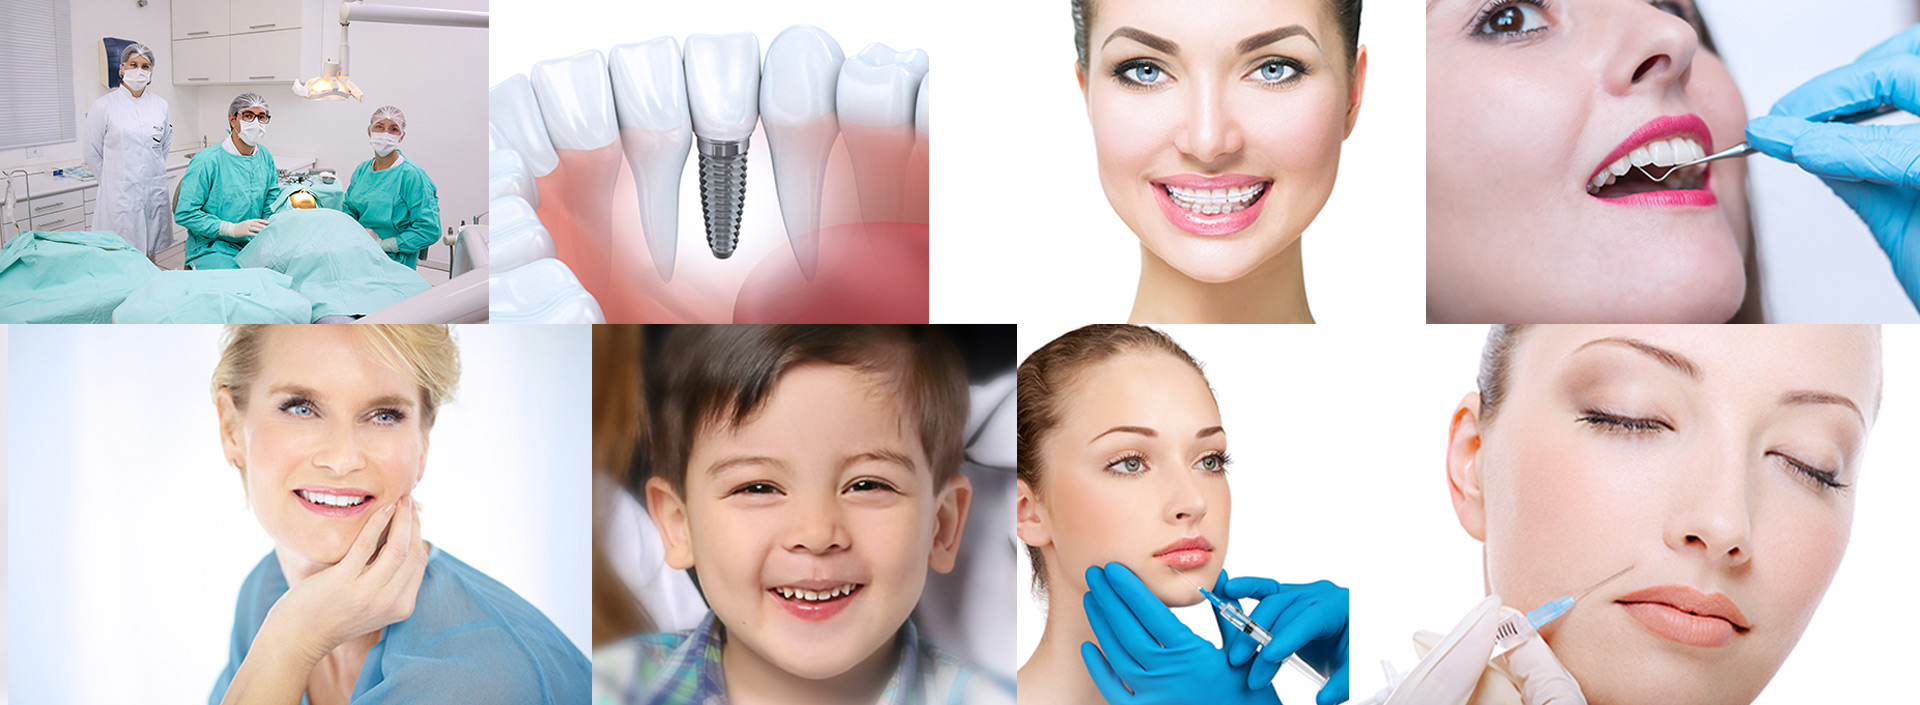 Tratamentos Comparin - Odontologia Especializada